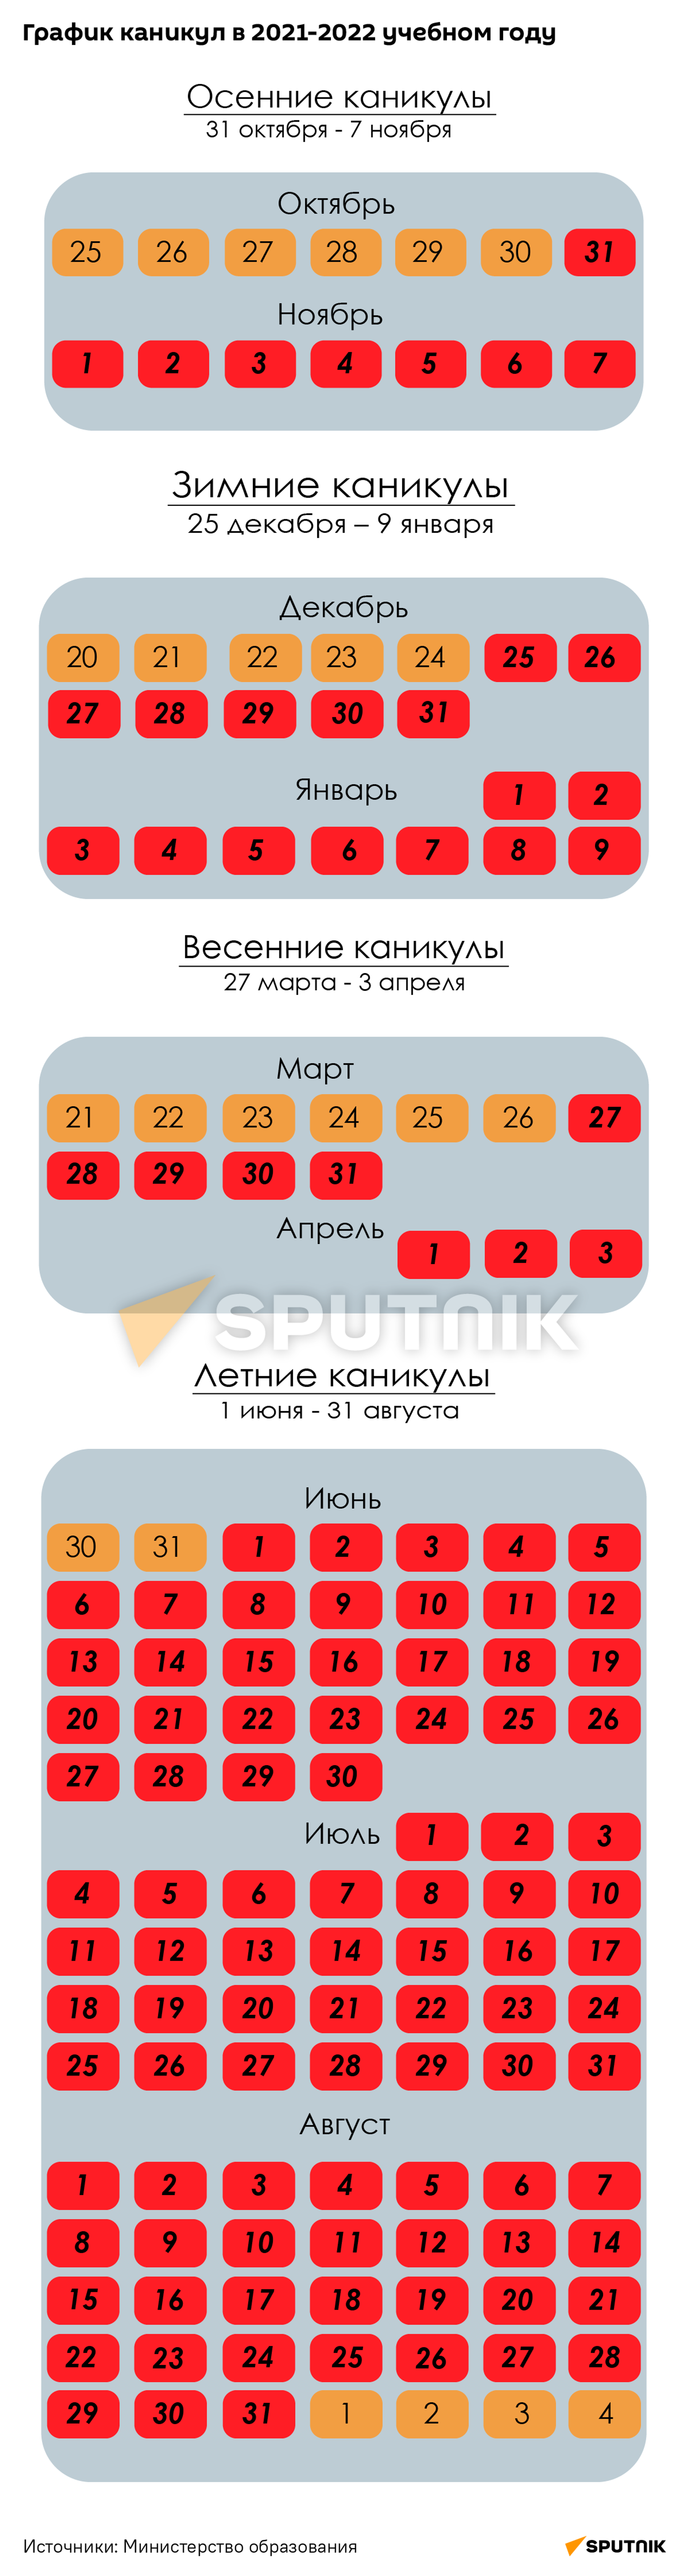 График школьных каникул на 2021-2022 год - Sputnik Беларусь, 1920, 01.09.2021